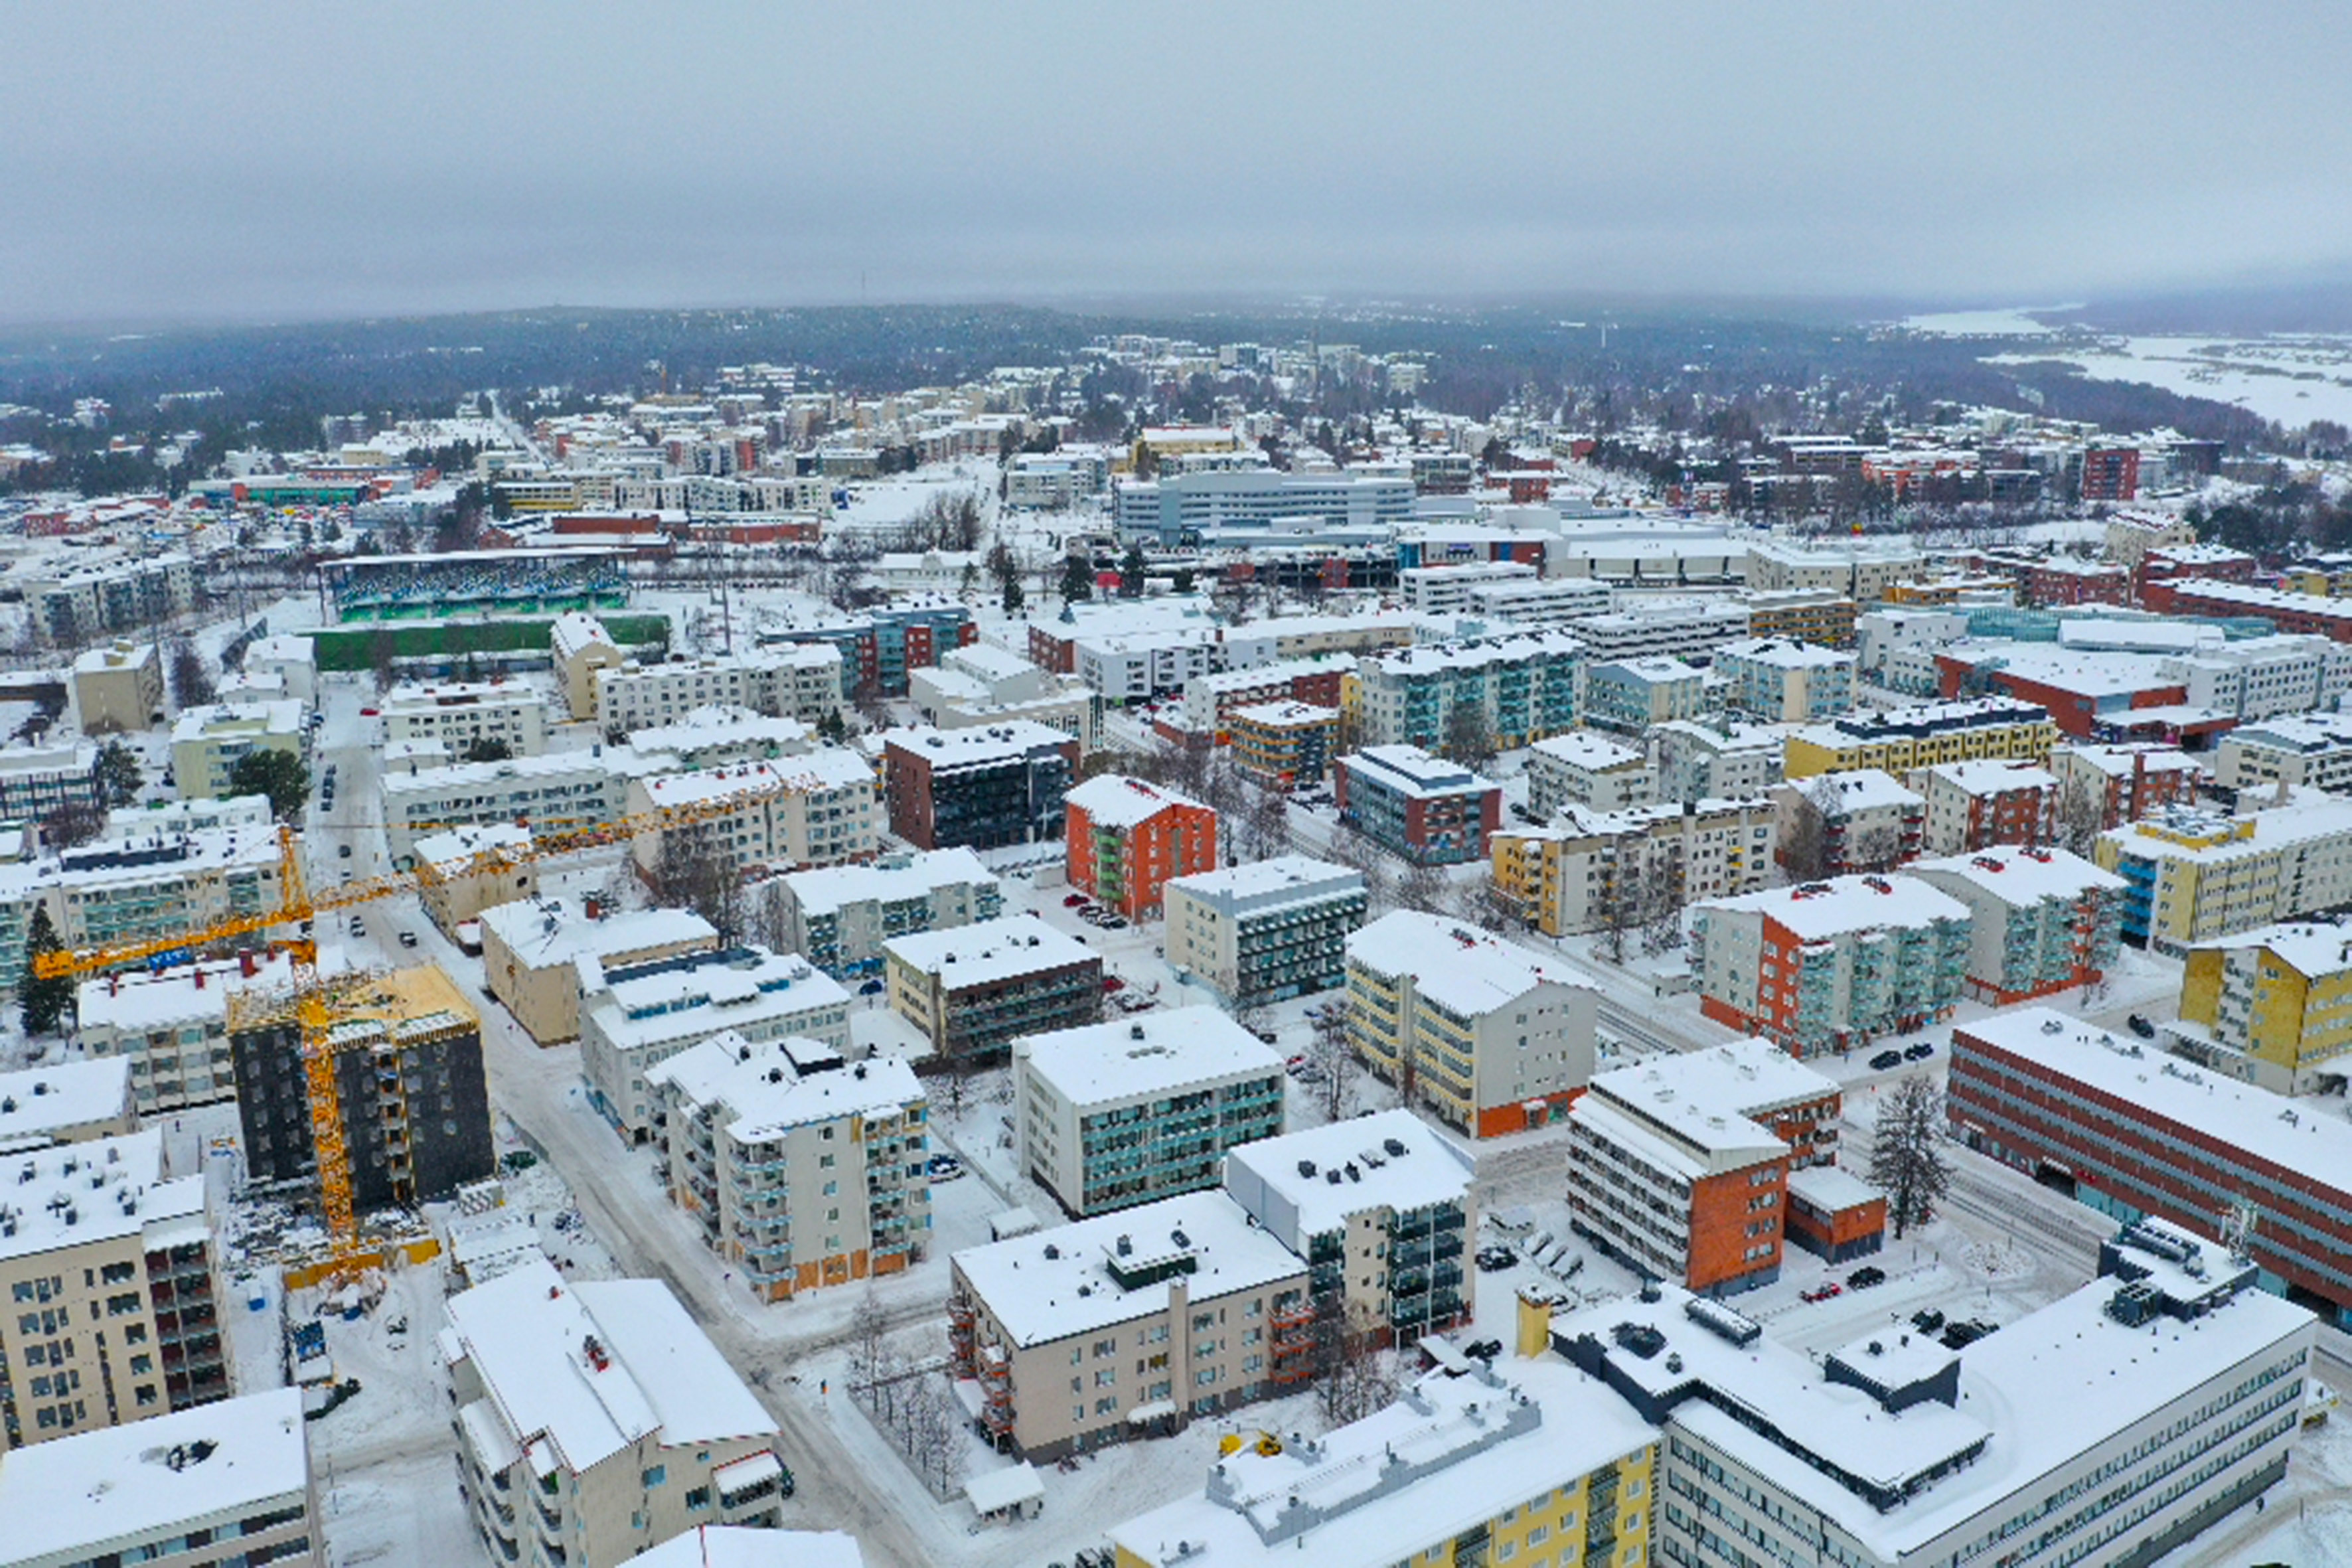 原创世界上惟一处在北极圈上的省会芬兰这座冰雪城市充满神秘色彩